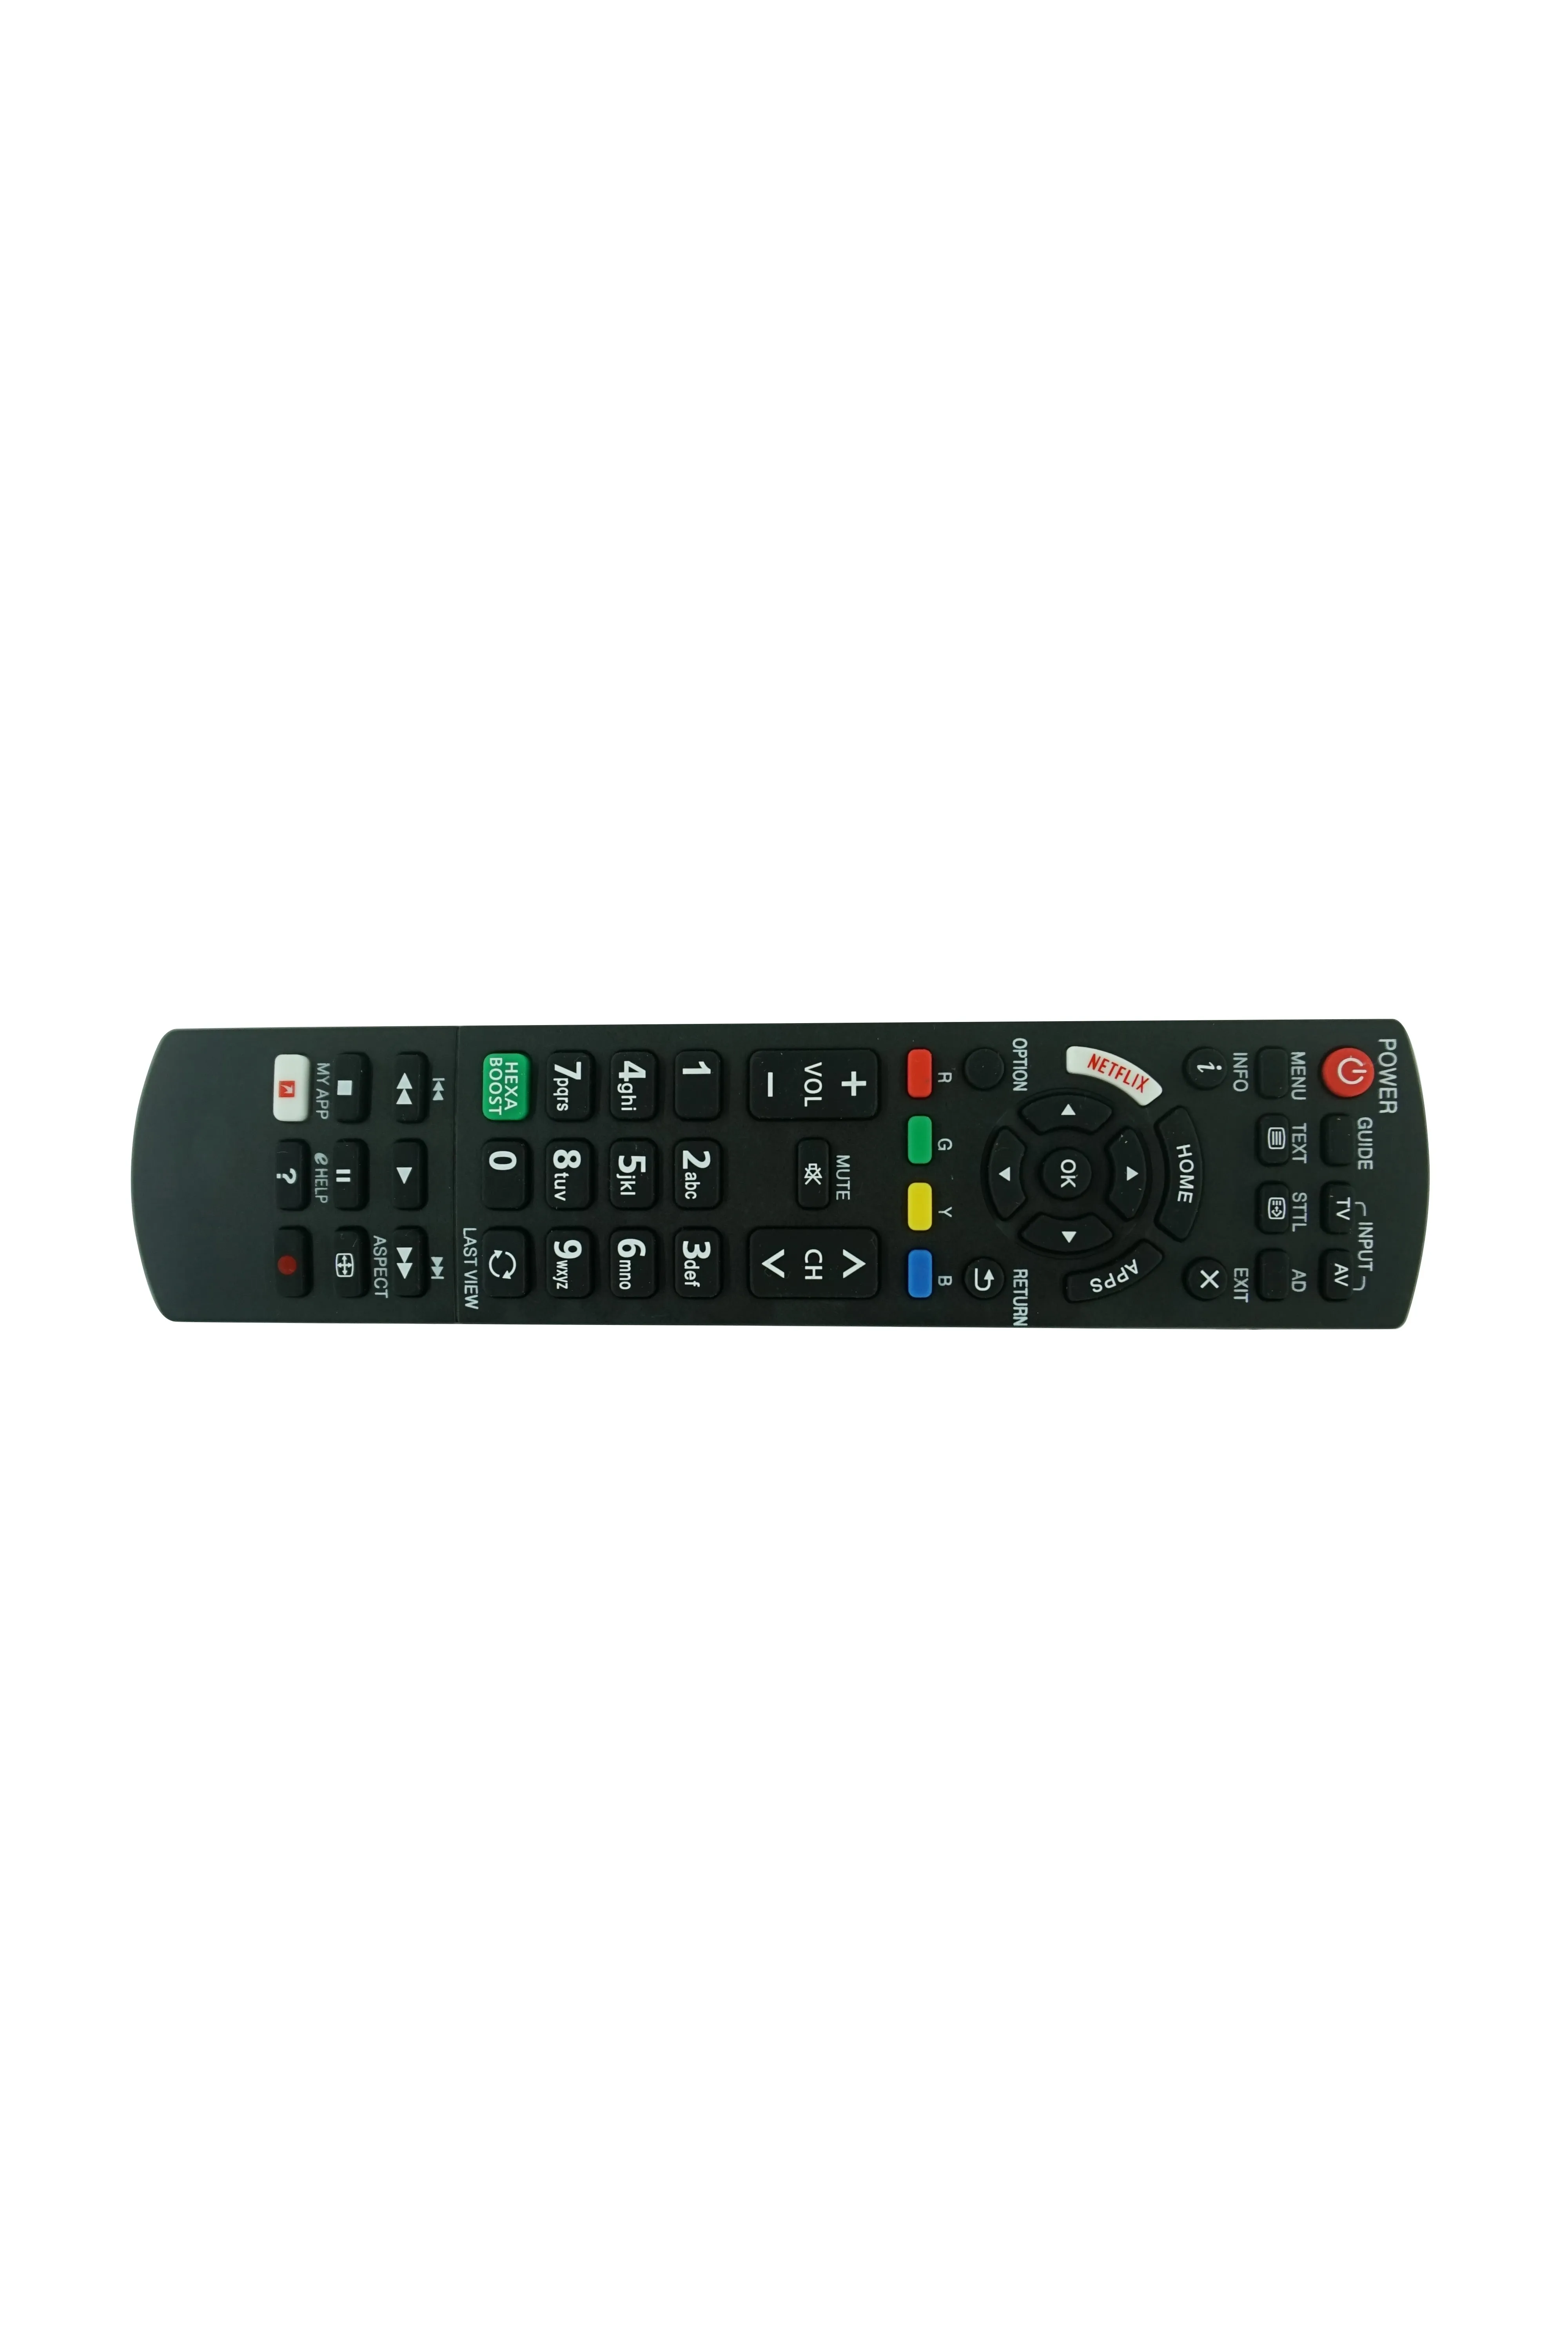 Fernbedienung für Panasonic TH-49GX740H TH-49GX740Z TH-40GX700H TH-43GX750D TH-43GX750W TH-43GX800H TH-49GX740H TH-49GX750W Smart UHD 4K OLED HDTV TV